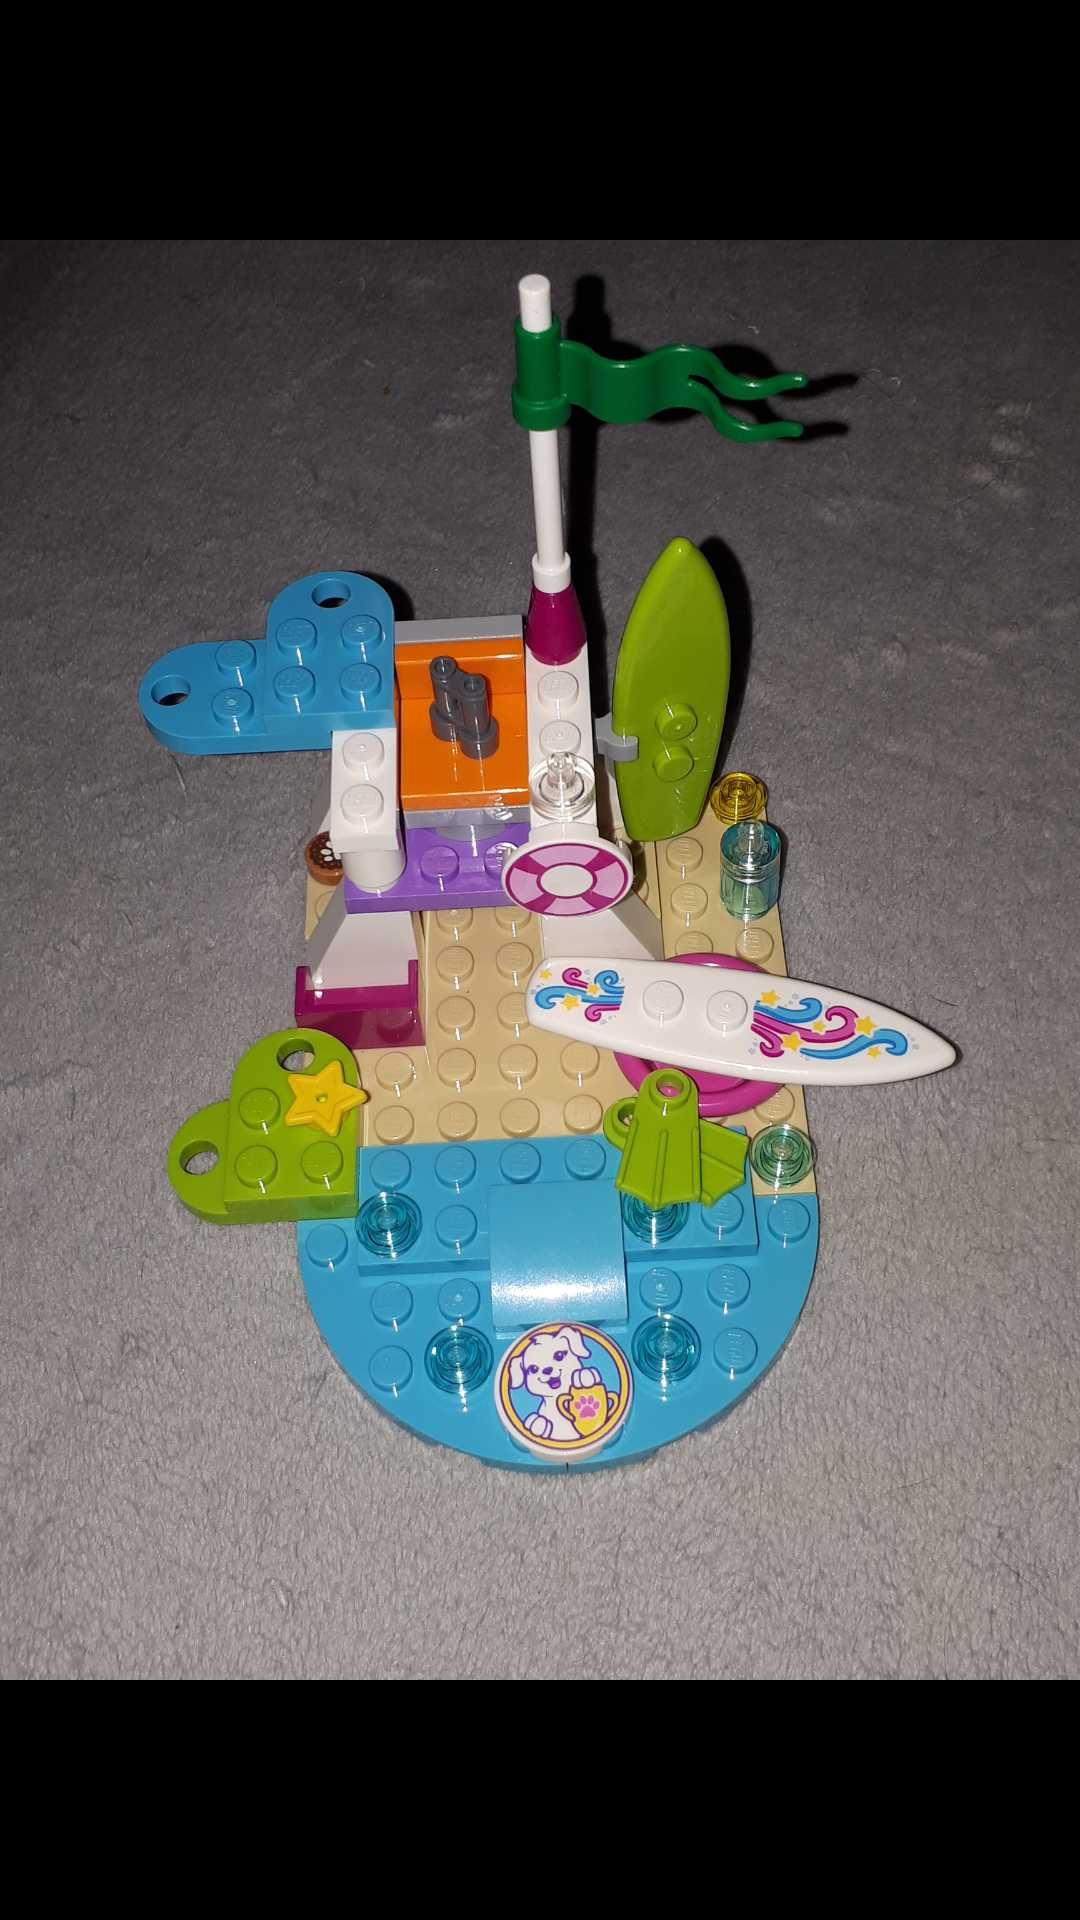 LEGO klocki Na plaży (surfing)